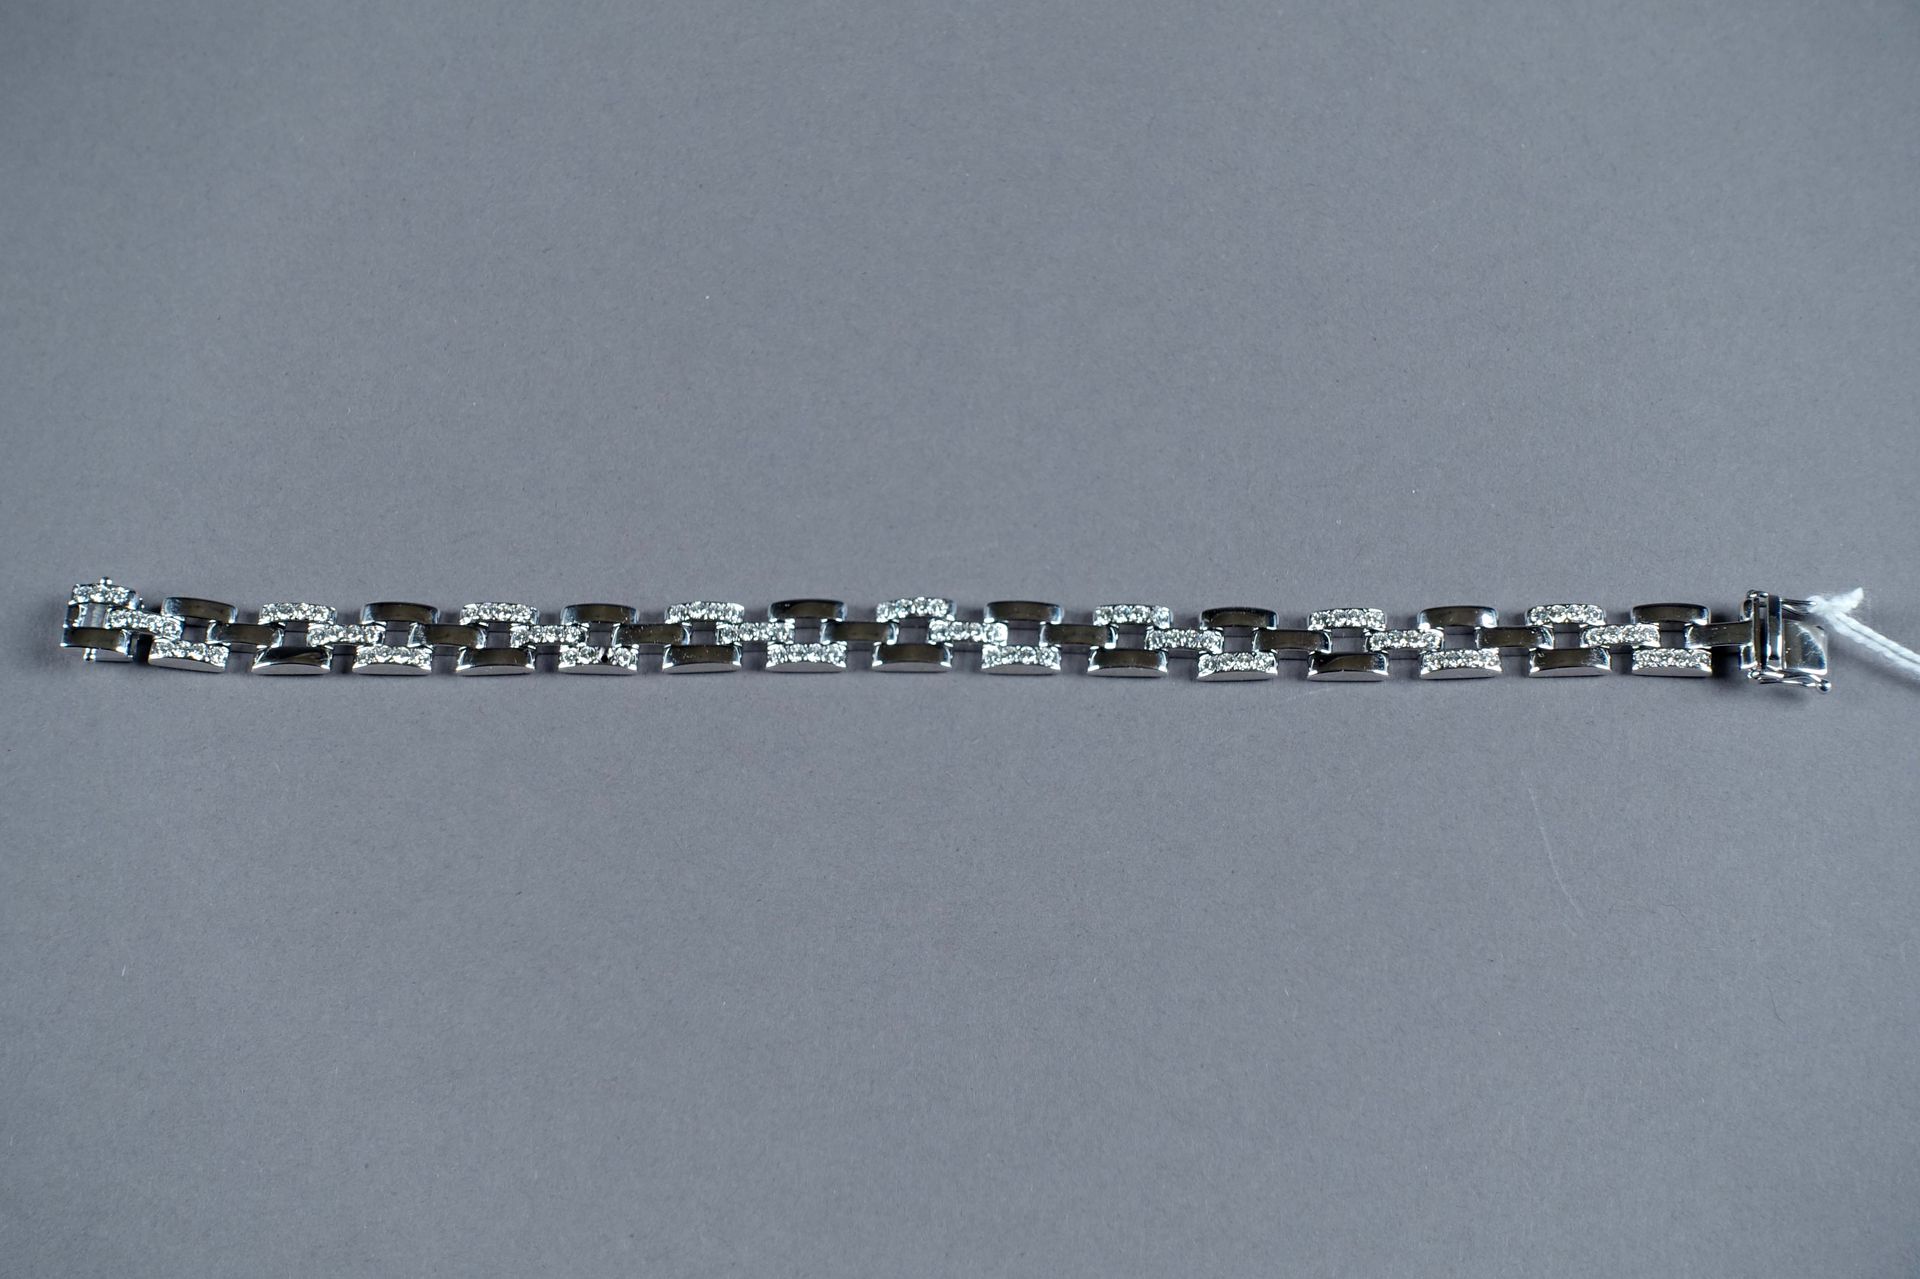 BRACELET. 镶嵌有95颗明亮式切割钻石（约3克拉40；有一颗钻石丢失）。镶嵌在18K白金中。重量：27.6克。长度：19.5厘米。